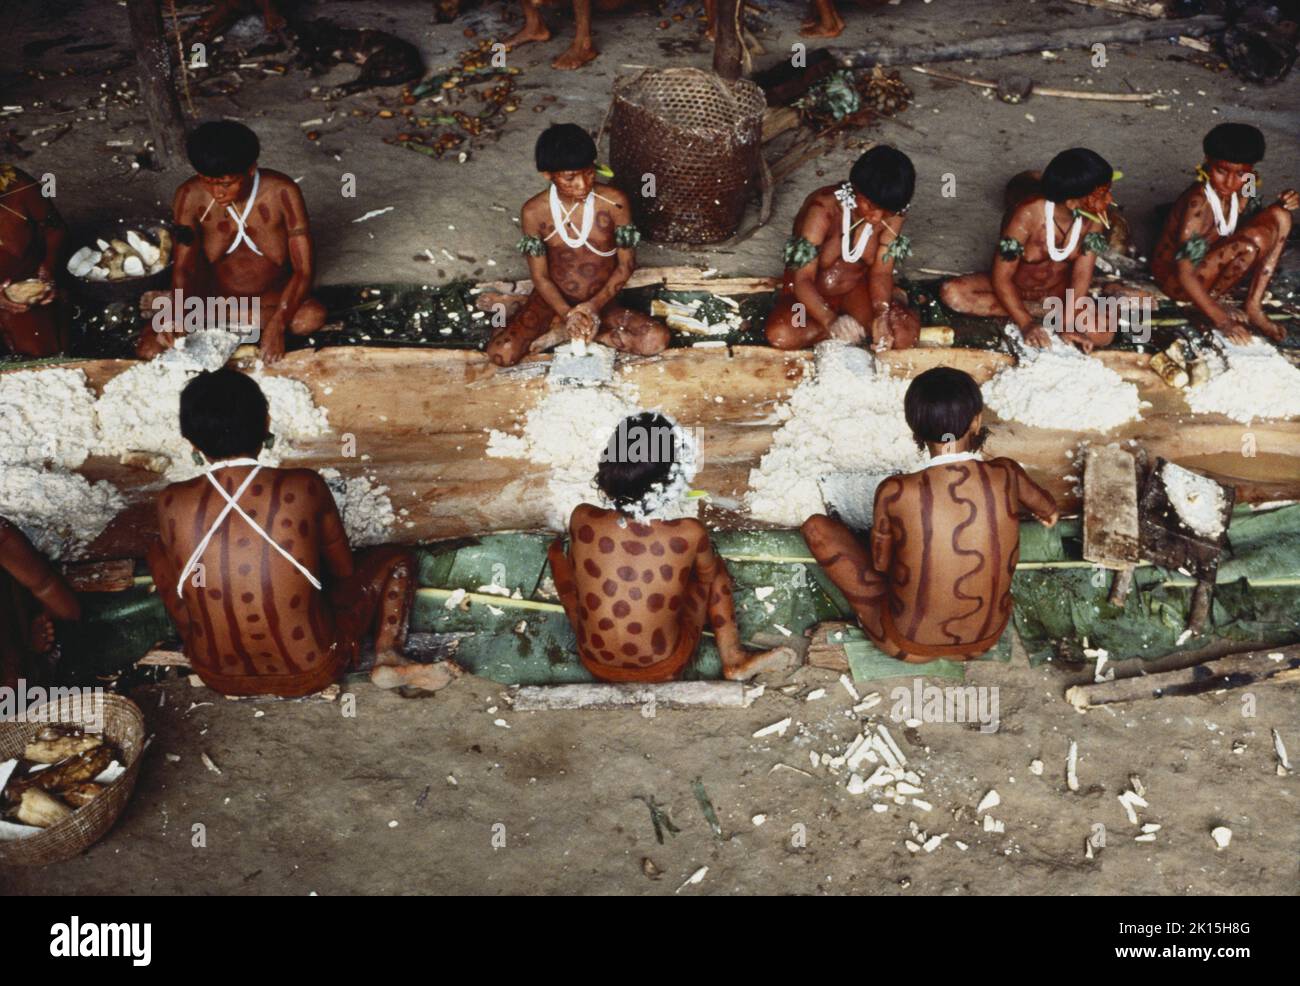 Yanomami-indianer reiben Maniok, um Brot für Gäste zu machen. Amazonas-Dschungel, Brasilien. Ca. 1984. Stockfoto